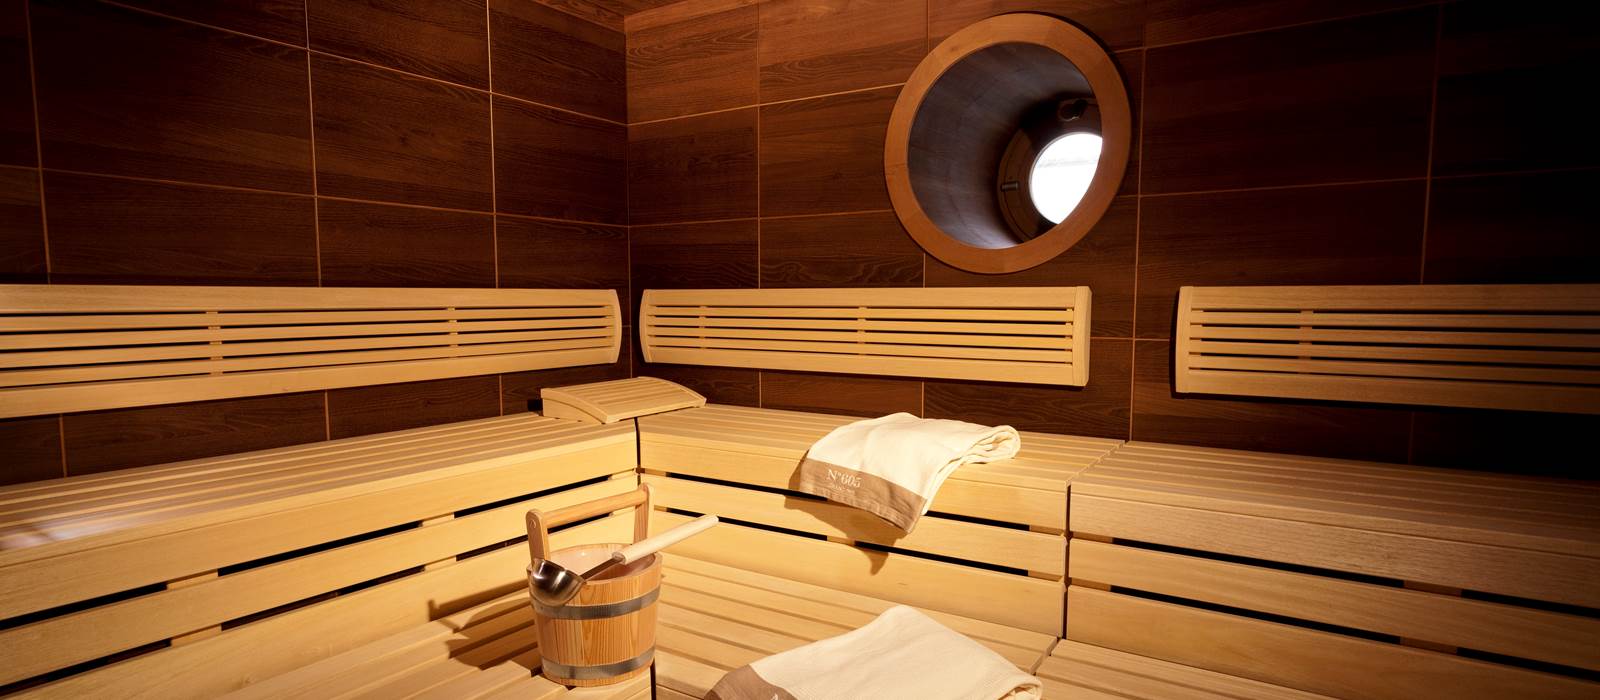 Sauna and steam room in Vienna